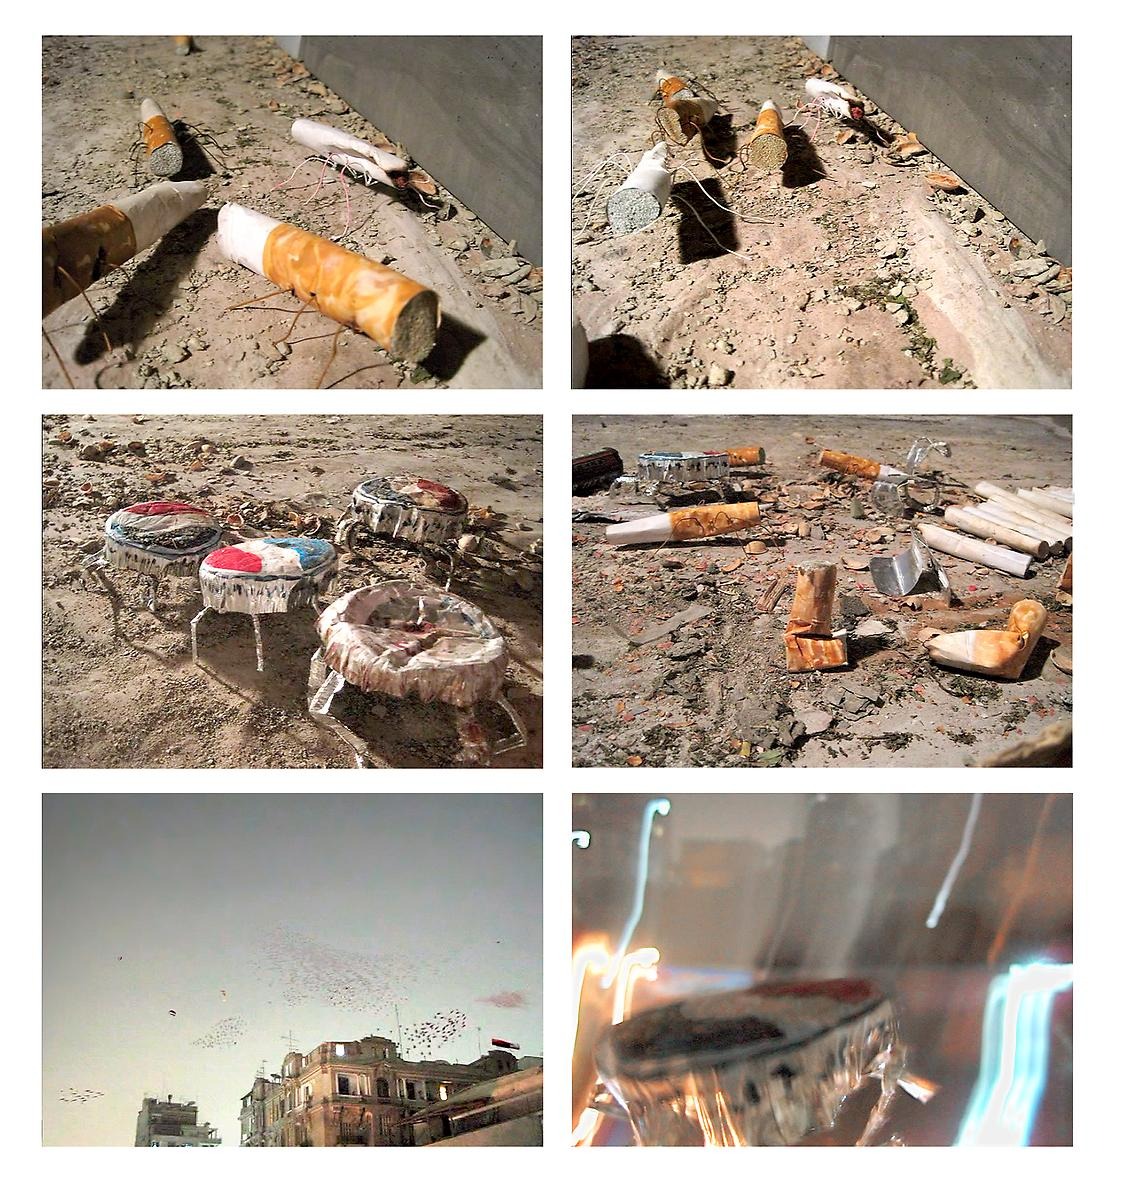 Ett bild collage av sex fotografier innehållandes cigaretter och kapsyler som fått ben så de ser ut som myror.